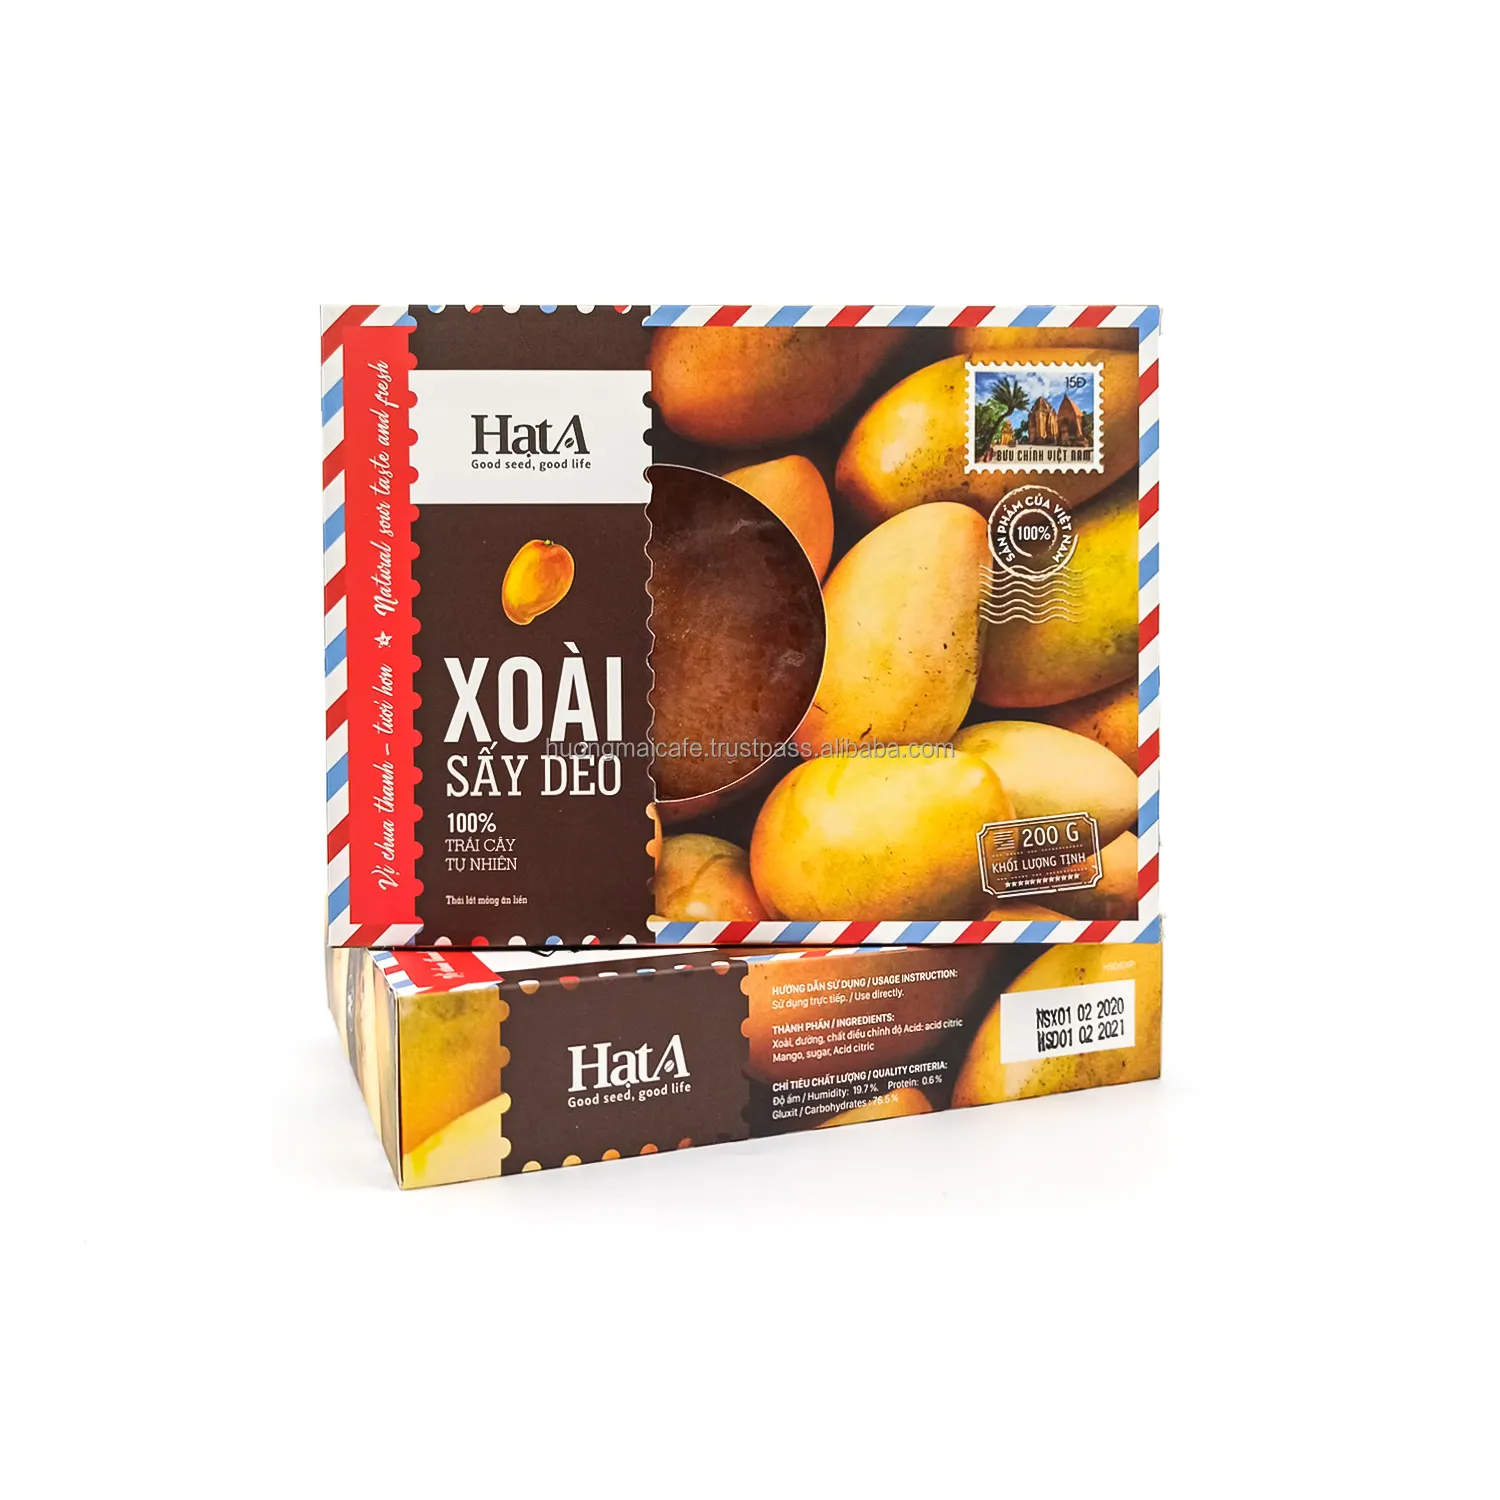 Мягкие сушеные фрукты манго-вьетнамское манго-NW 200 г в коробке-органический продукт-сделано во Вьетнаме